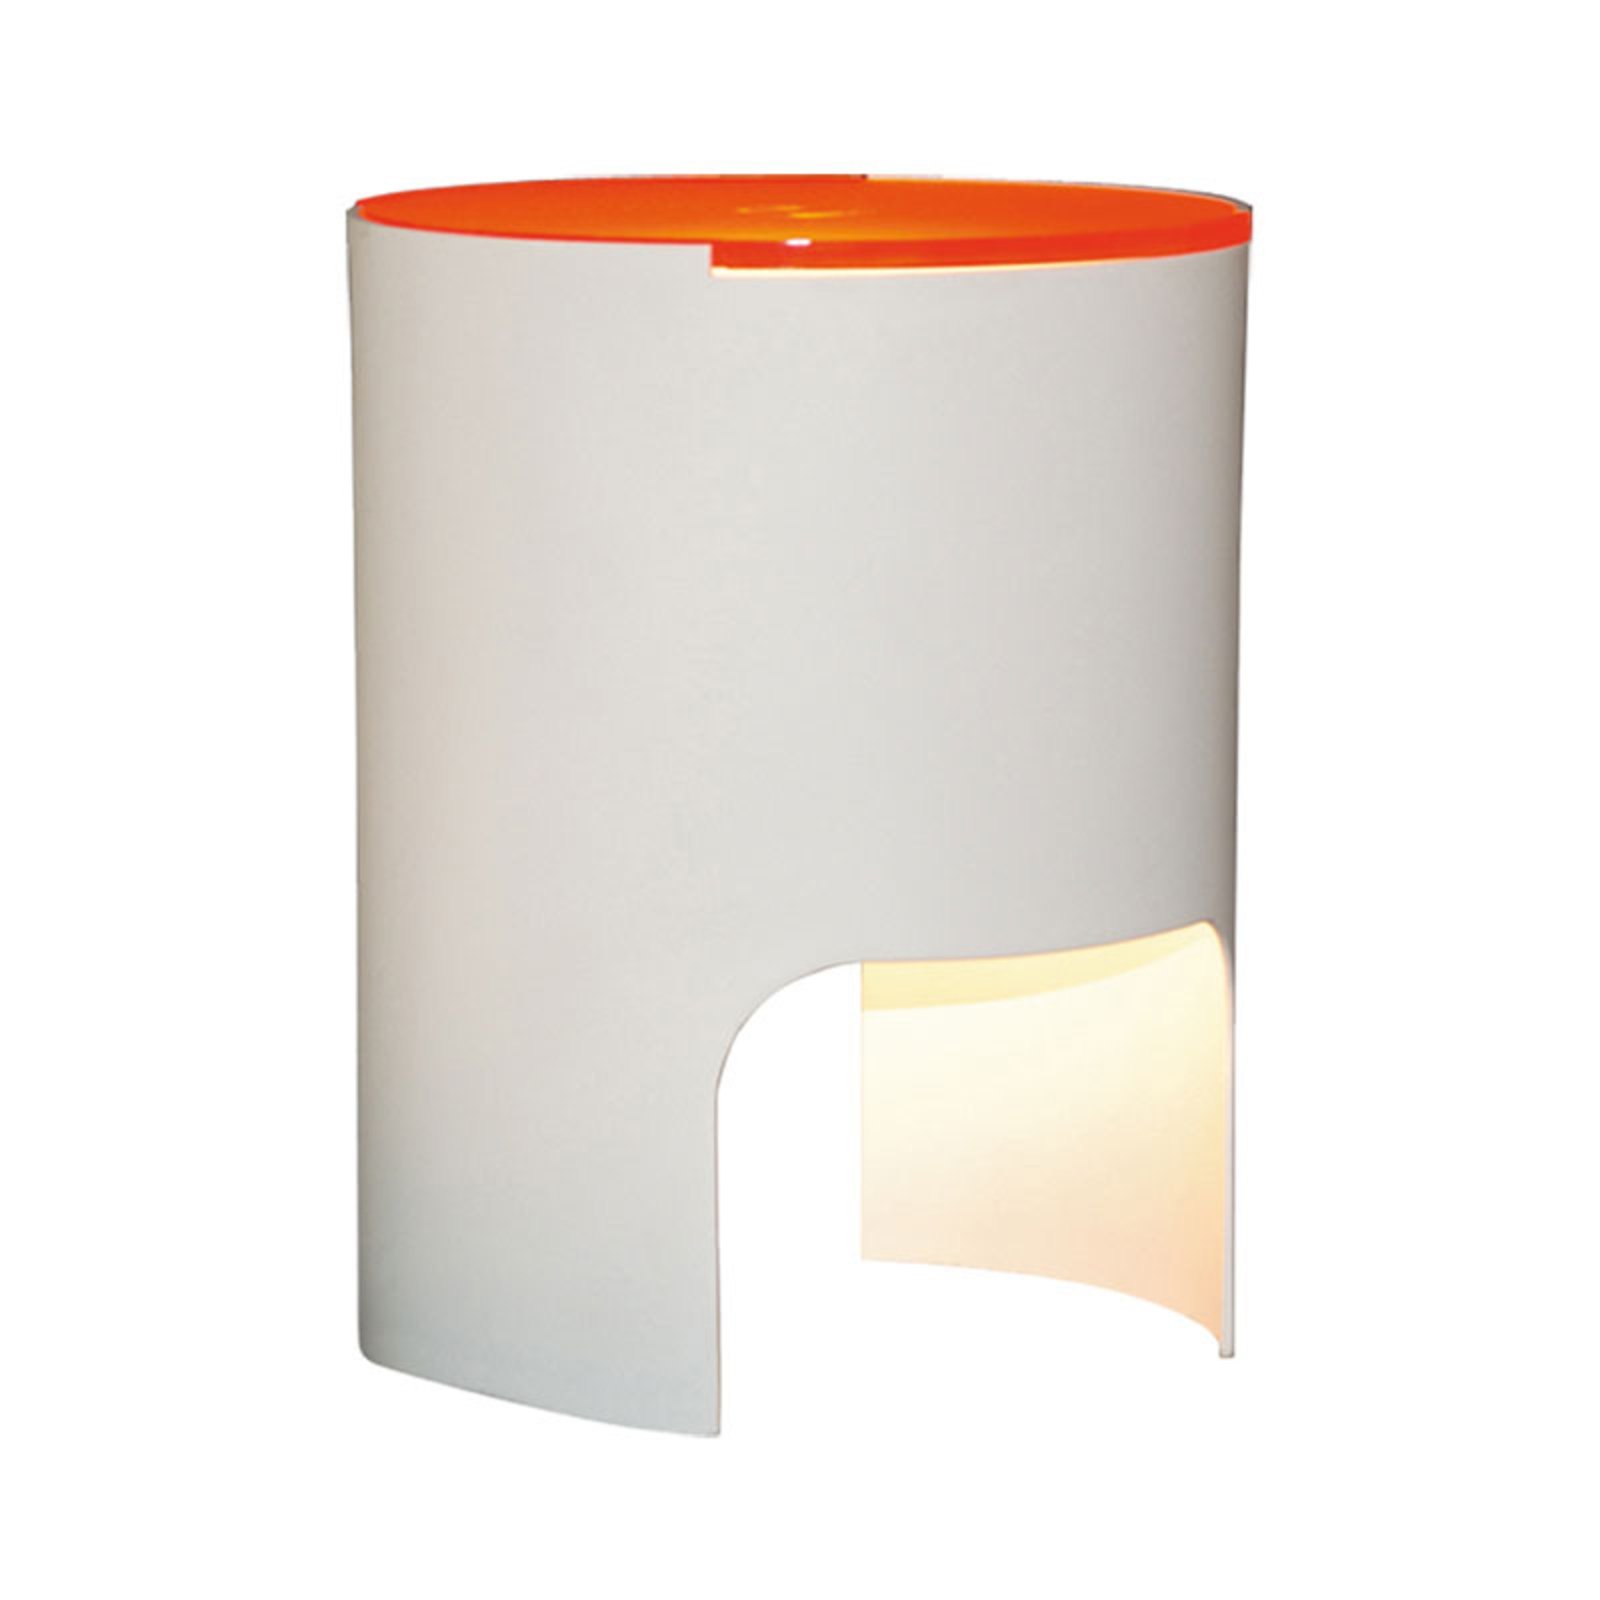 Martinelli Luce Civetta table lamp orange diffuser